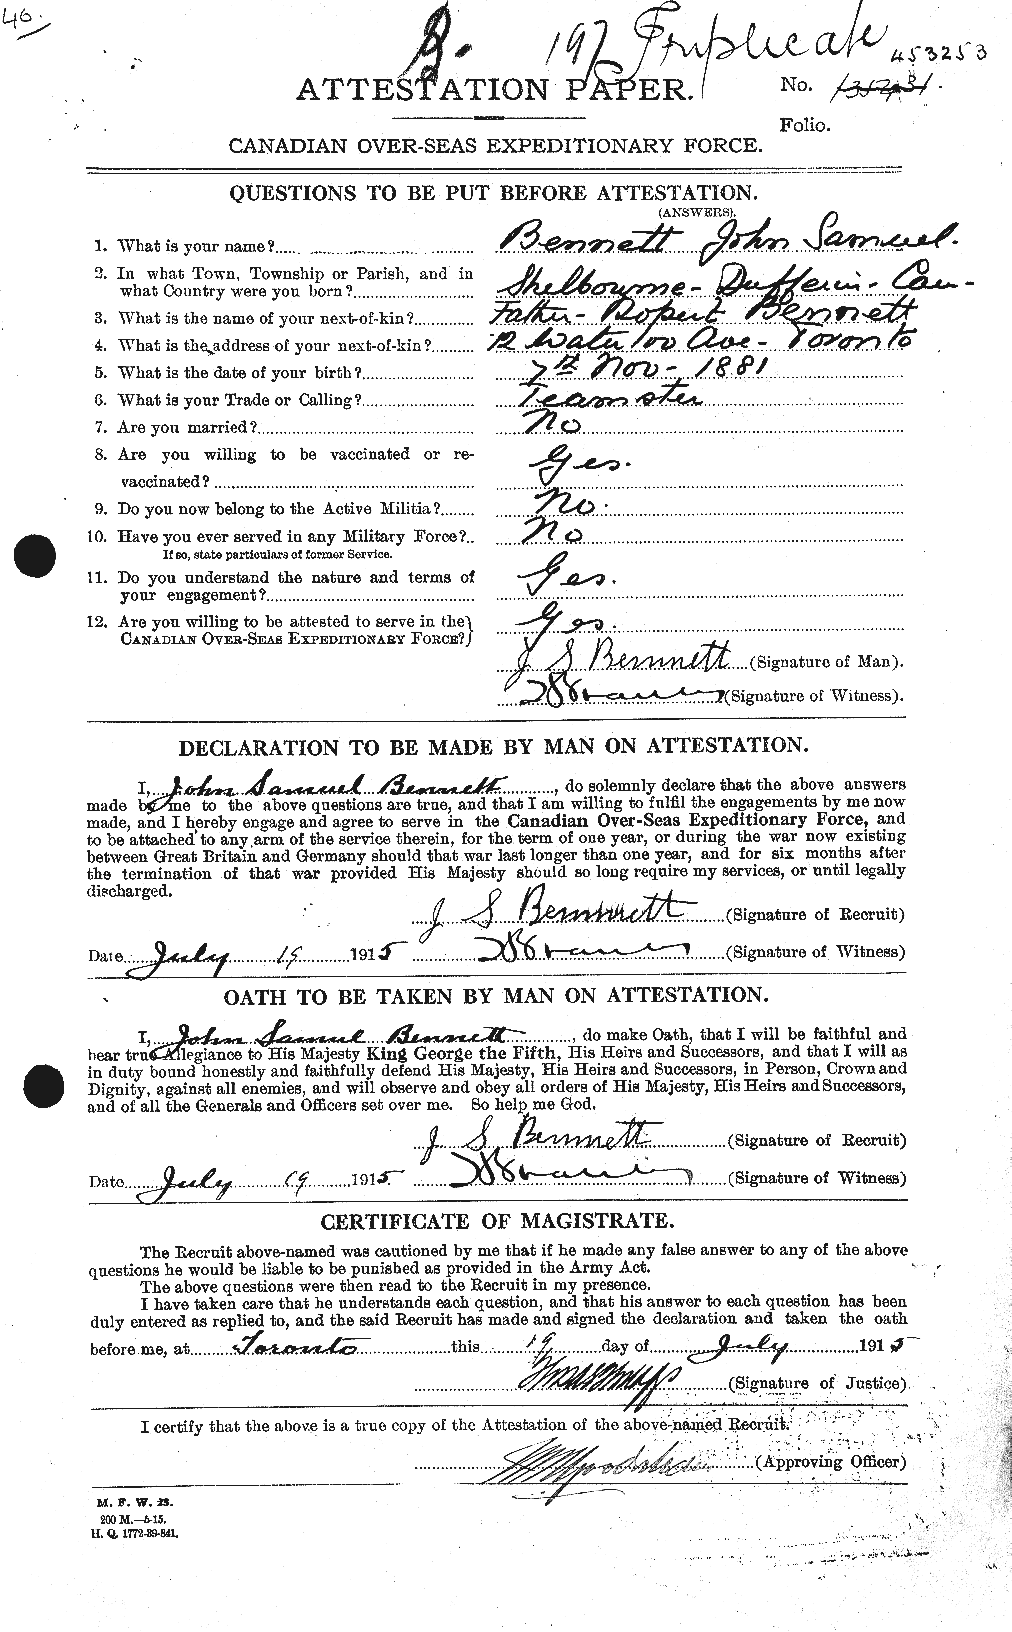 Dossiers du Personnel de la Première Guerre mondiale - CEC 238615a